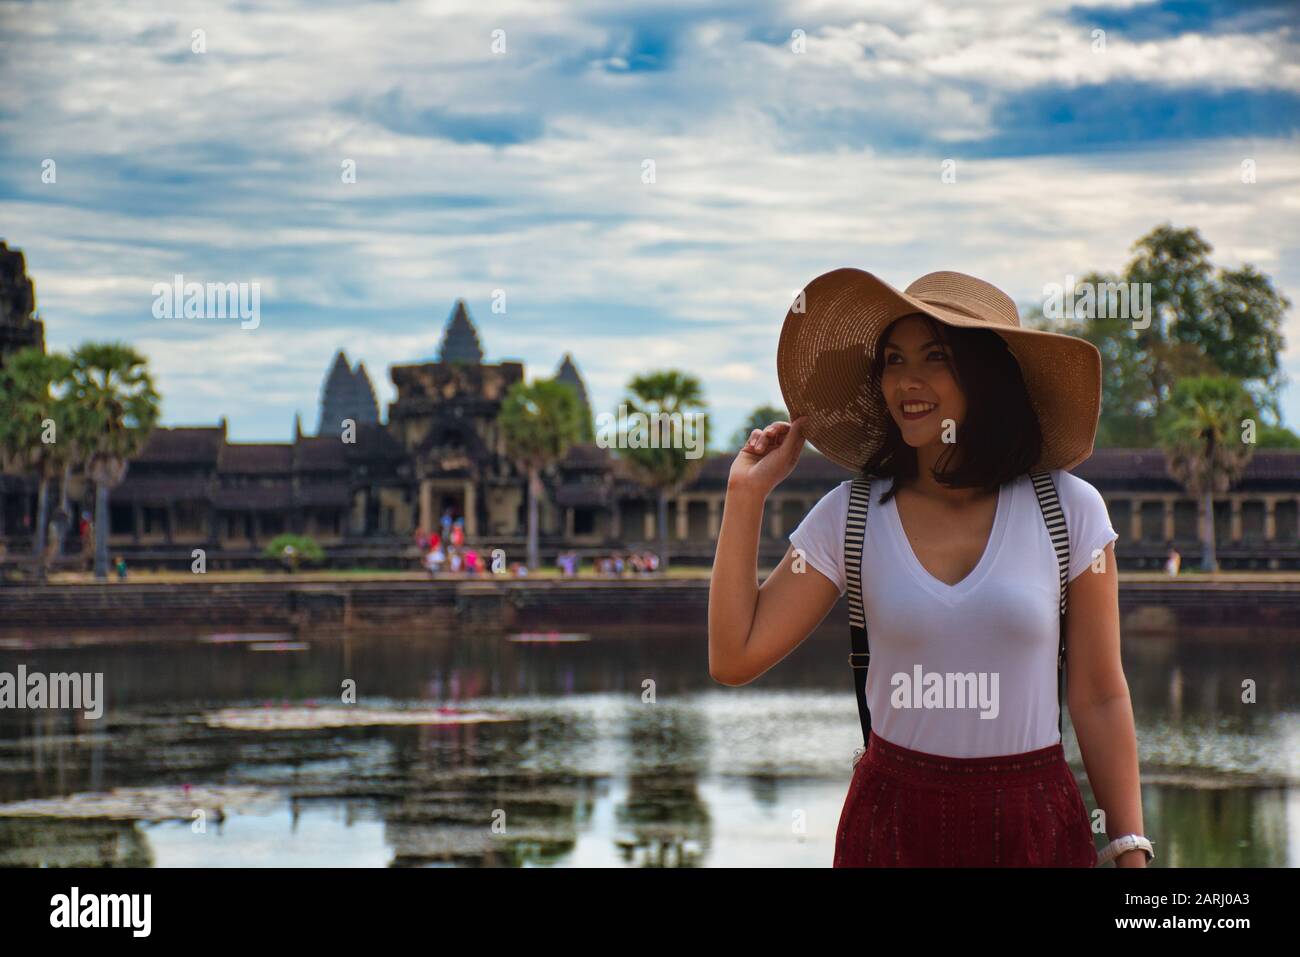 Belle, jolie, jeune fille thaïlandaise explore les ruines anciennes d'Angkor Wat (ville/capitale des temples) complexe de temple hindou à Siem Reap, au Cambodge Banque D'Images